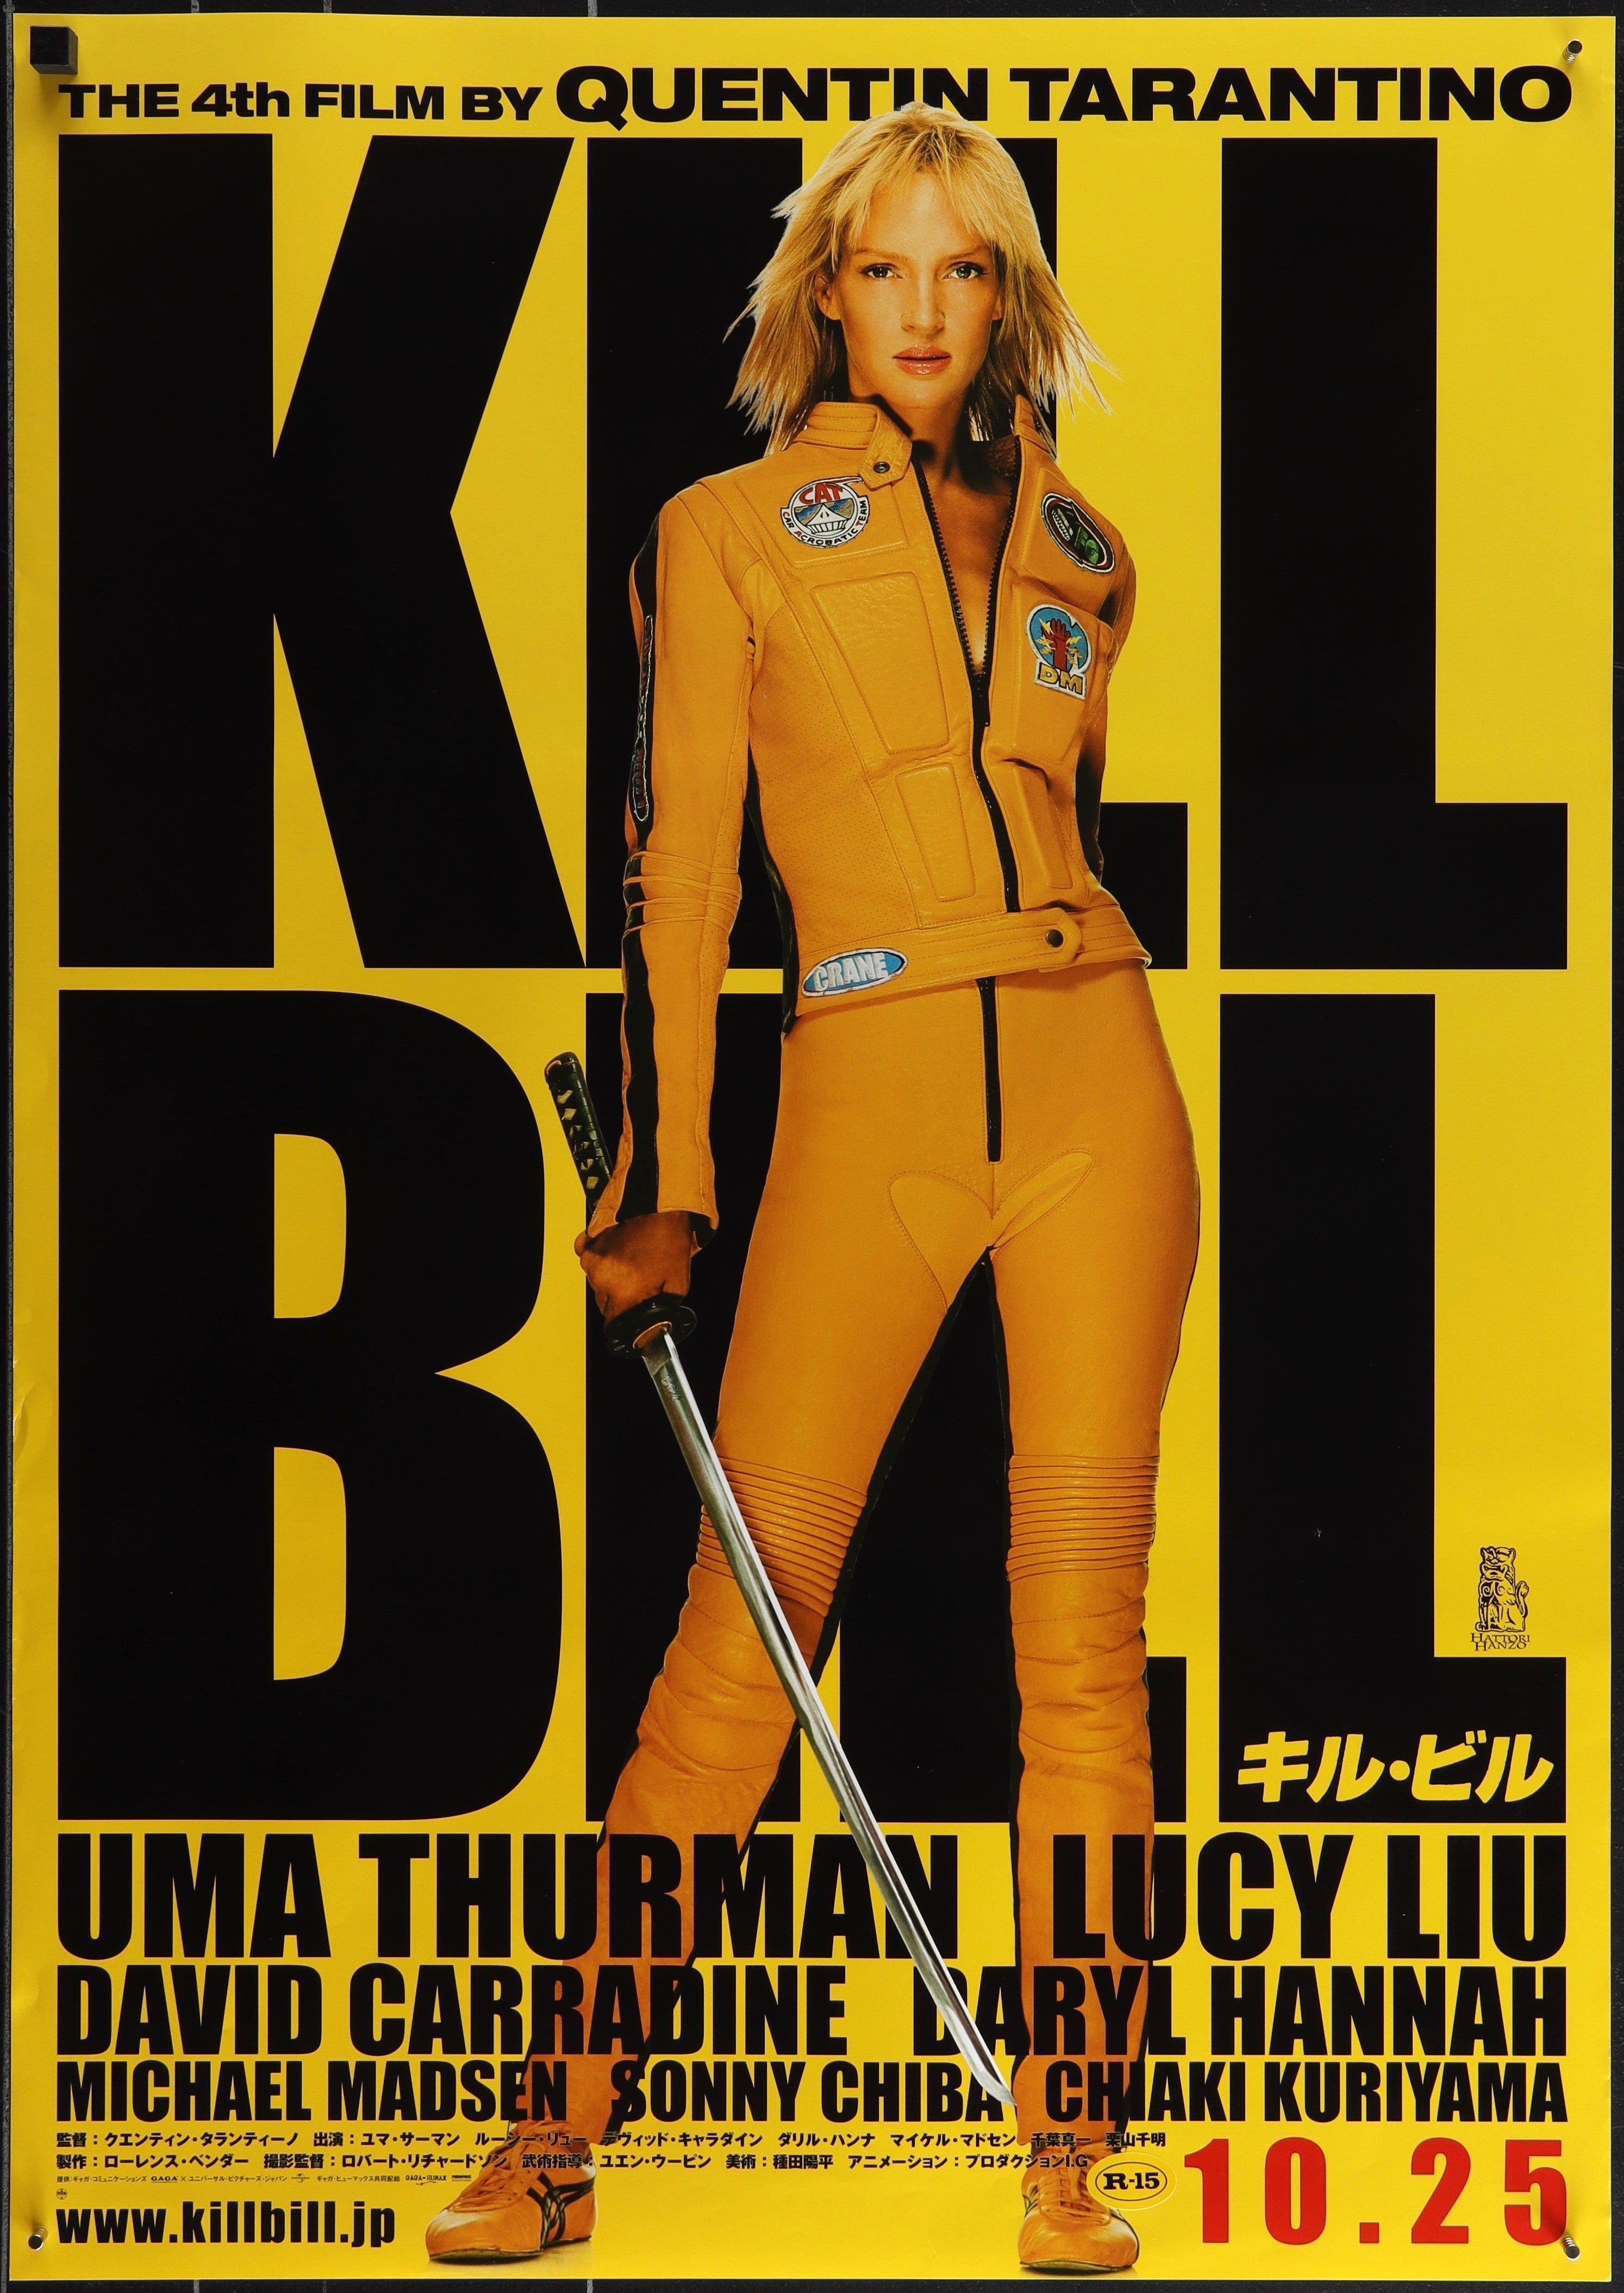 KILL BILL: VOL 1  (2003)